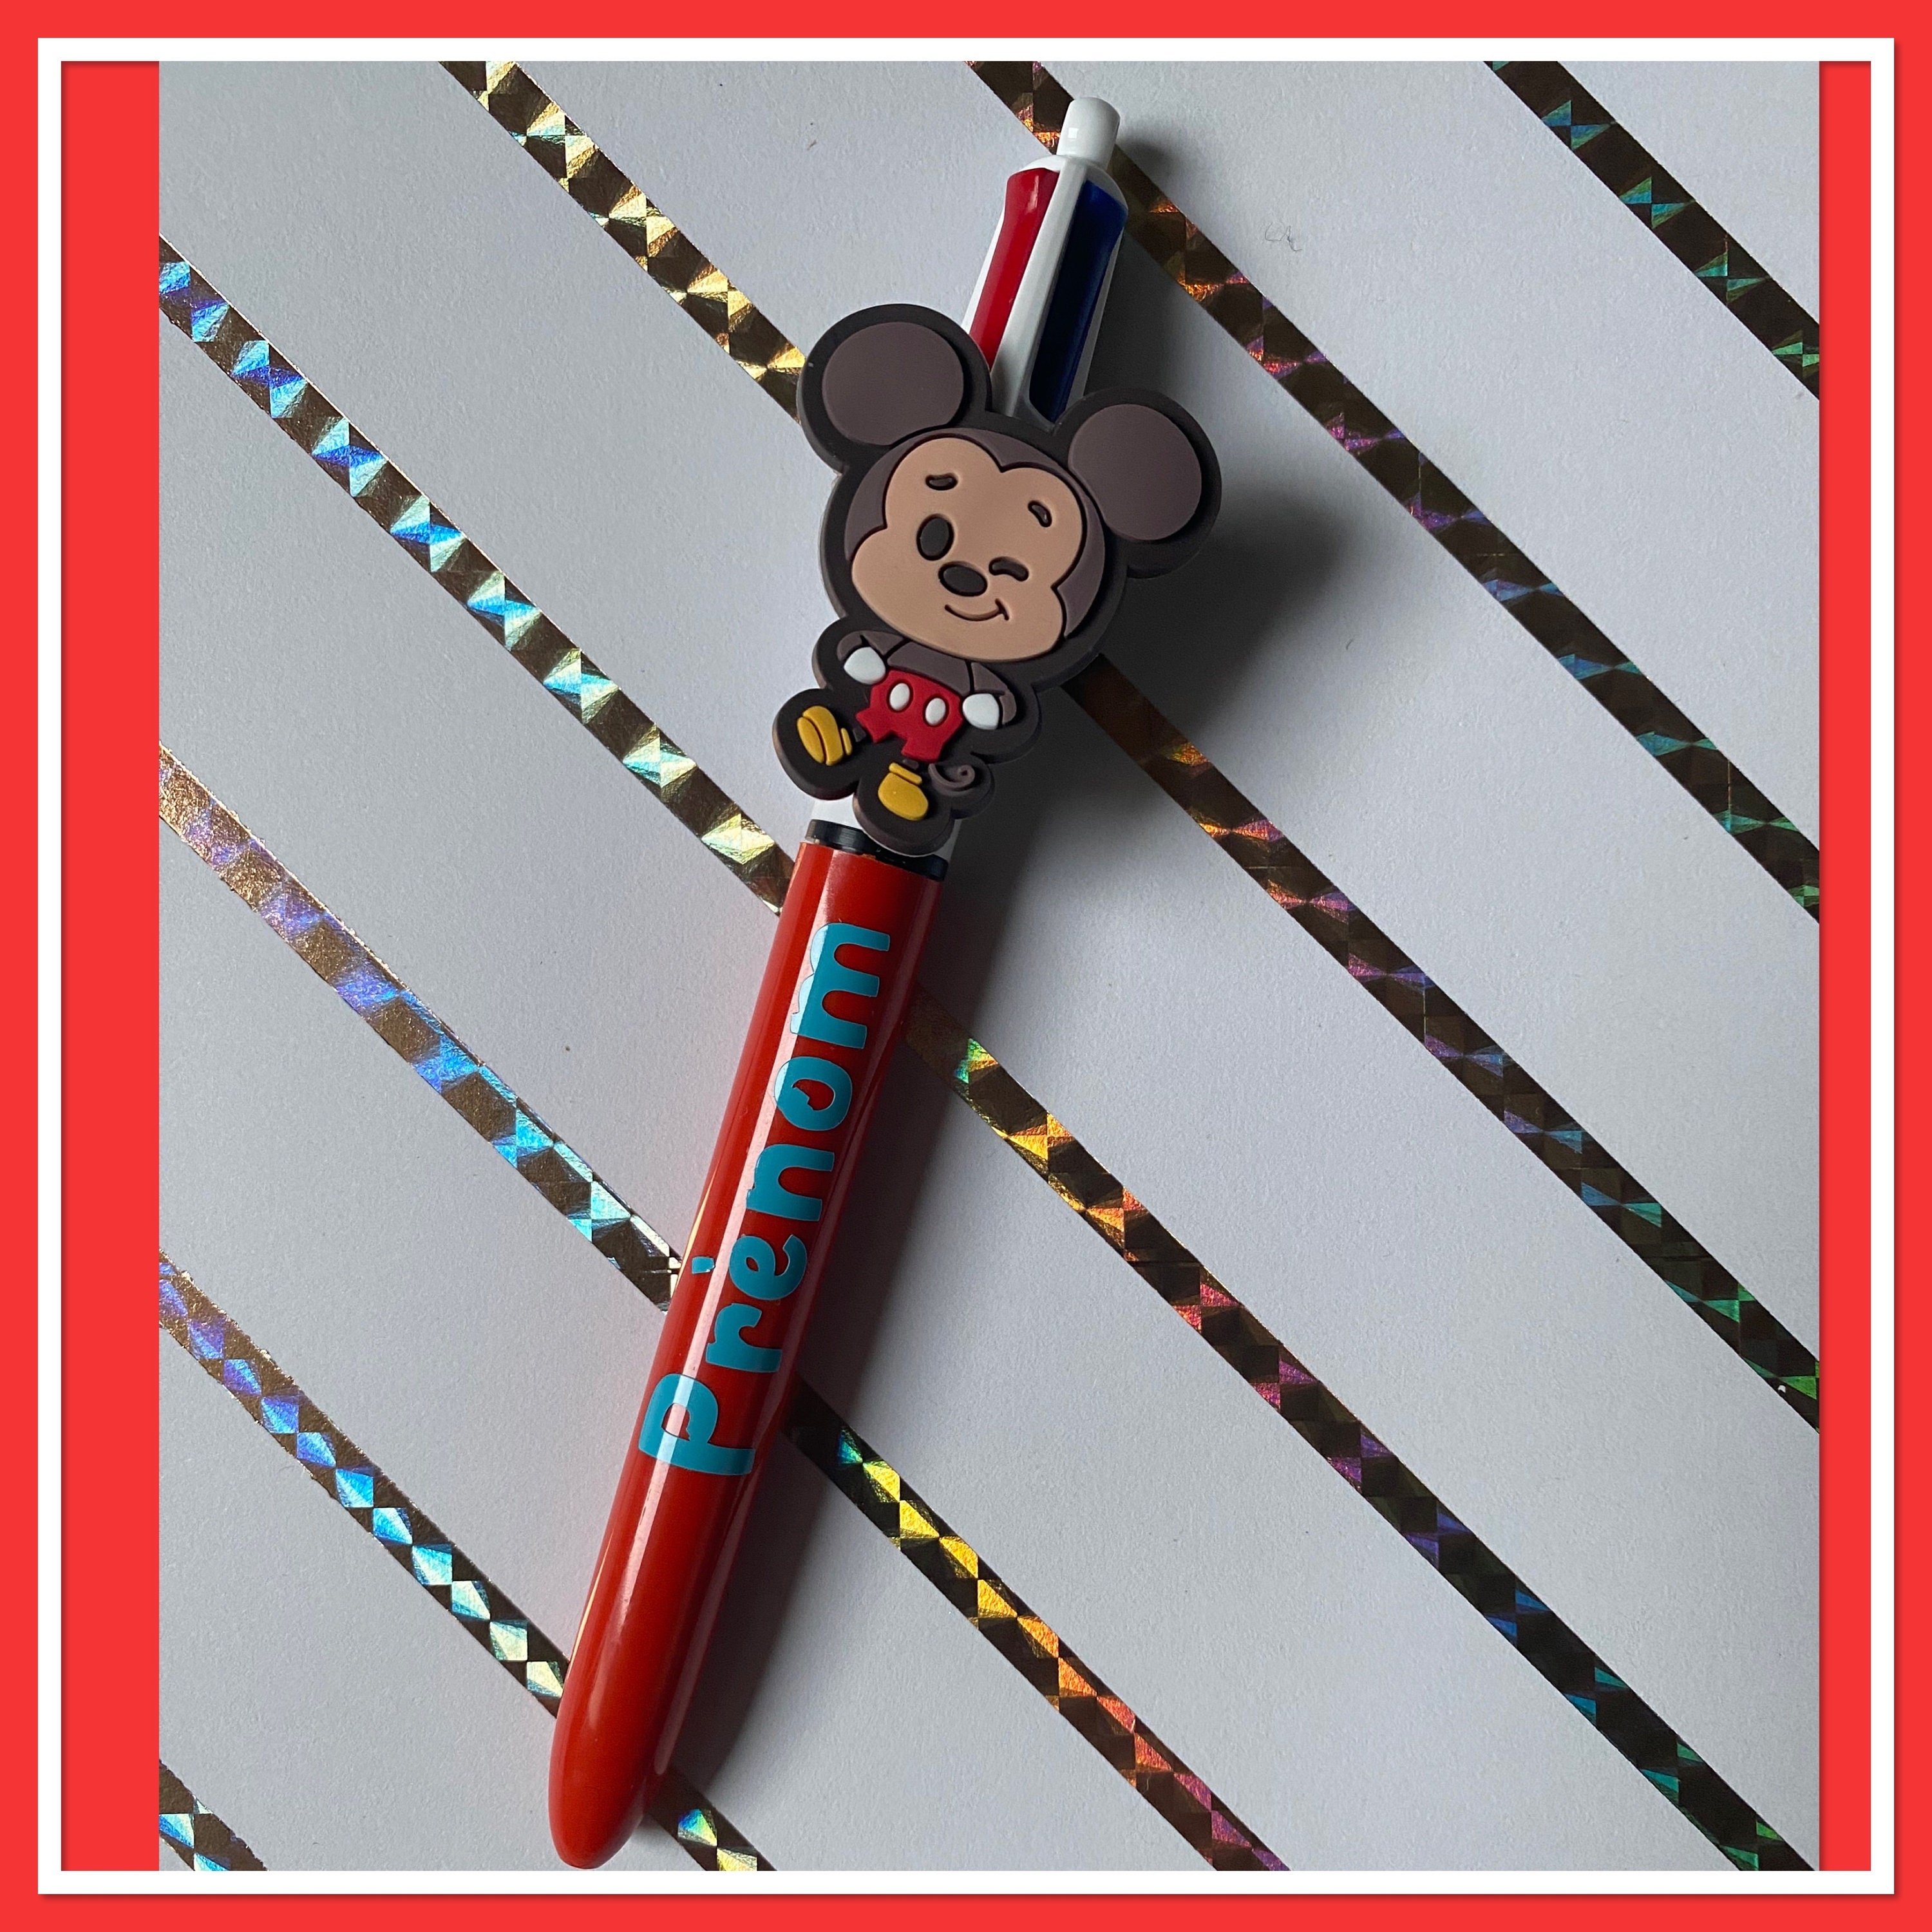 Disney - Mickey Mouse : Lot de 3 stylos 4 couleurs Bic